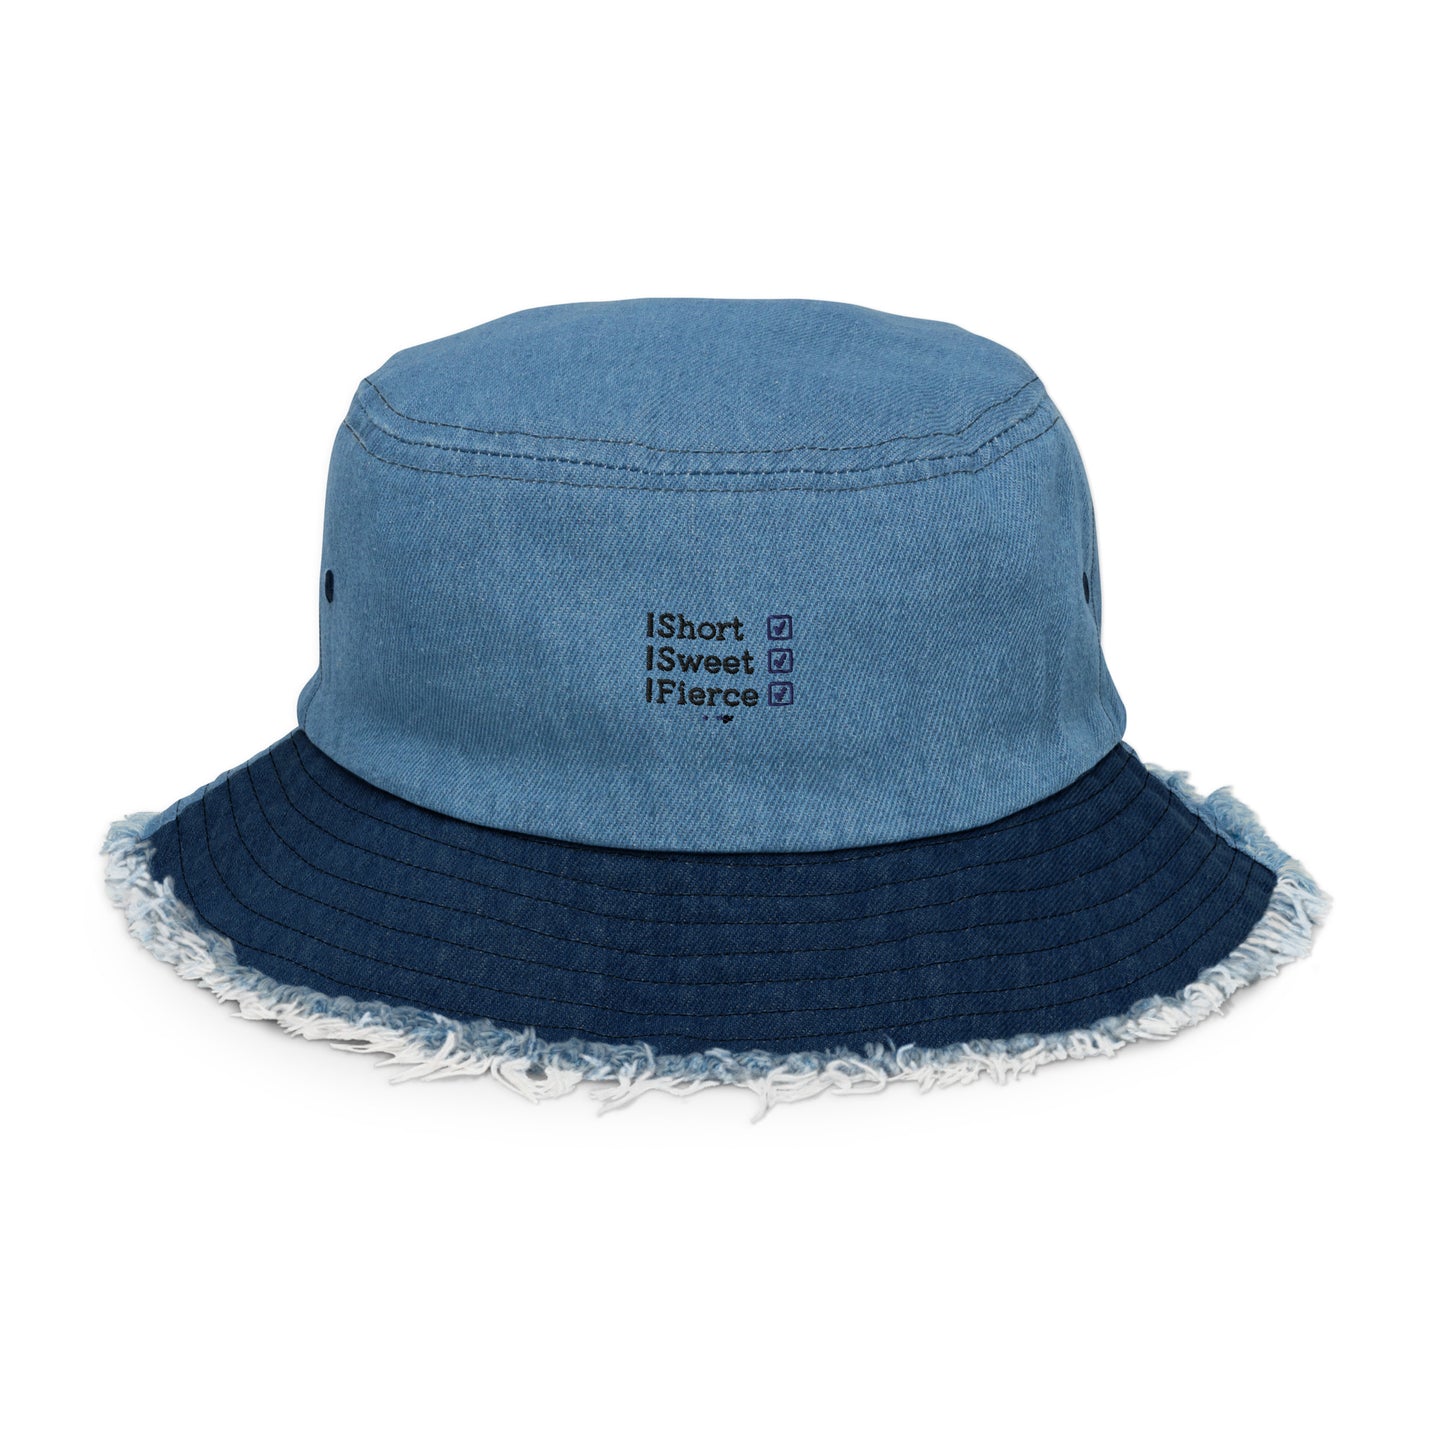 Distressed denim bucket hat - Short, Sweet, Fierce